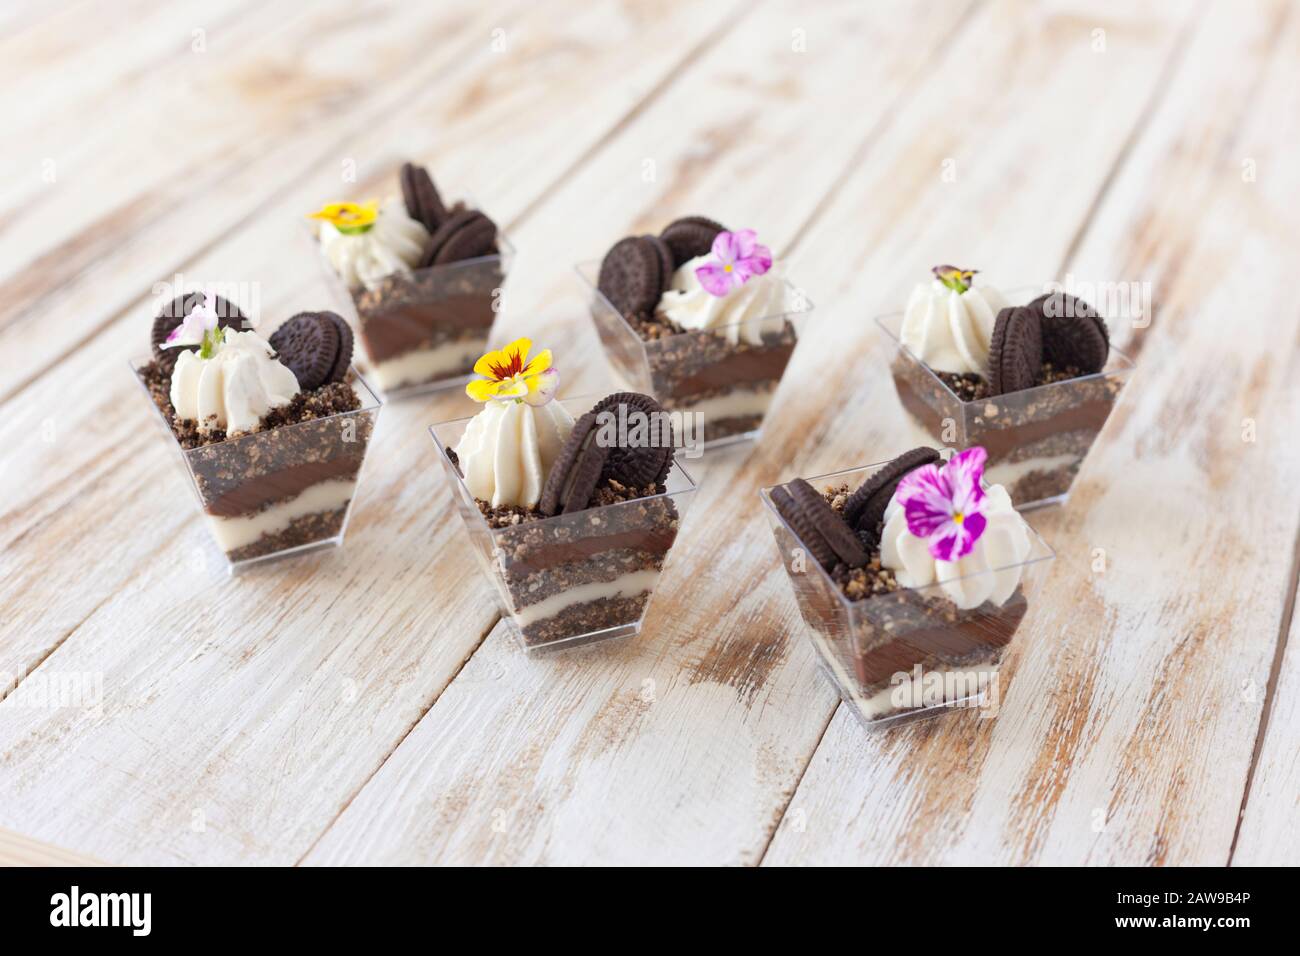 Schwarz-weiße Schokolade mit Plätzchen triflen. Dekoriert mit einer Blume auf altem weißen Holzhintergrund. Traditionelles süßes Dessert in englischer Sprache. Stockfoto